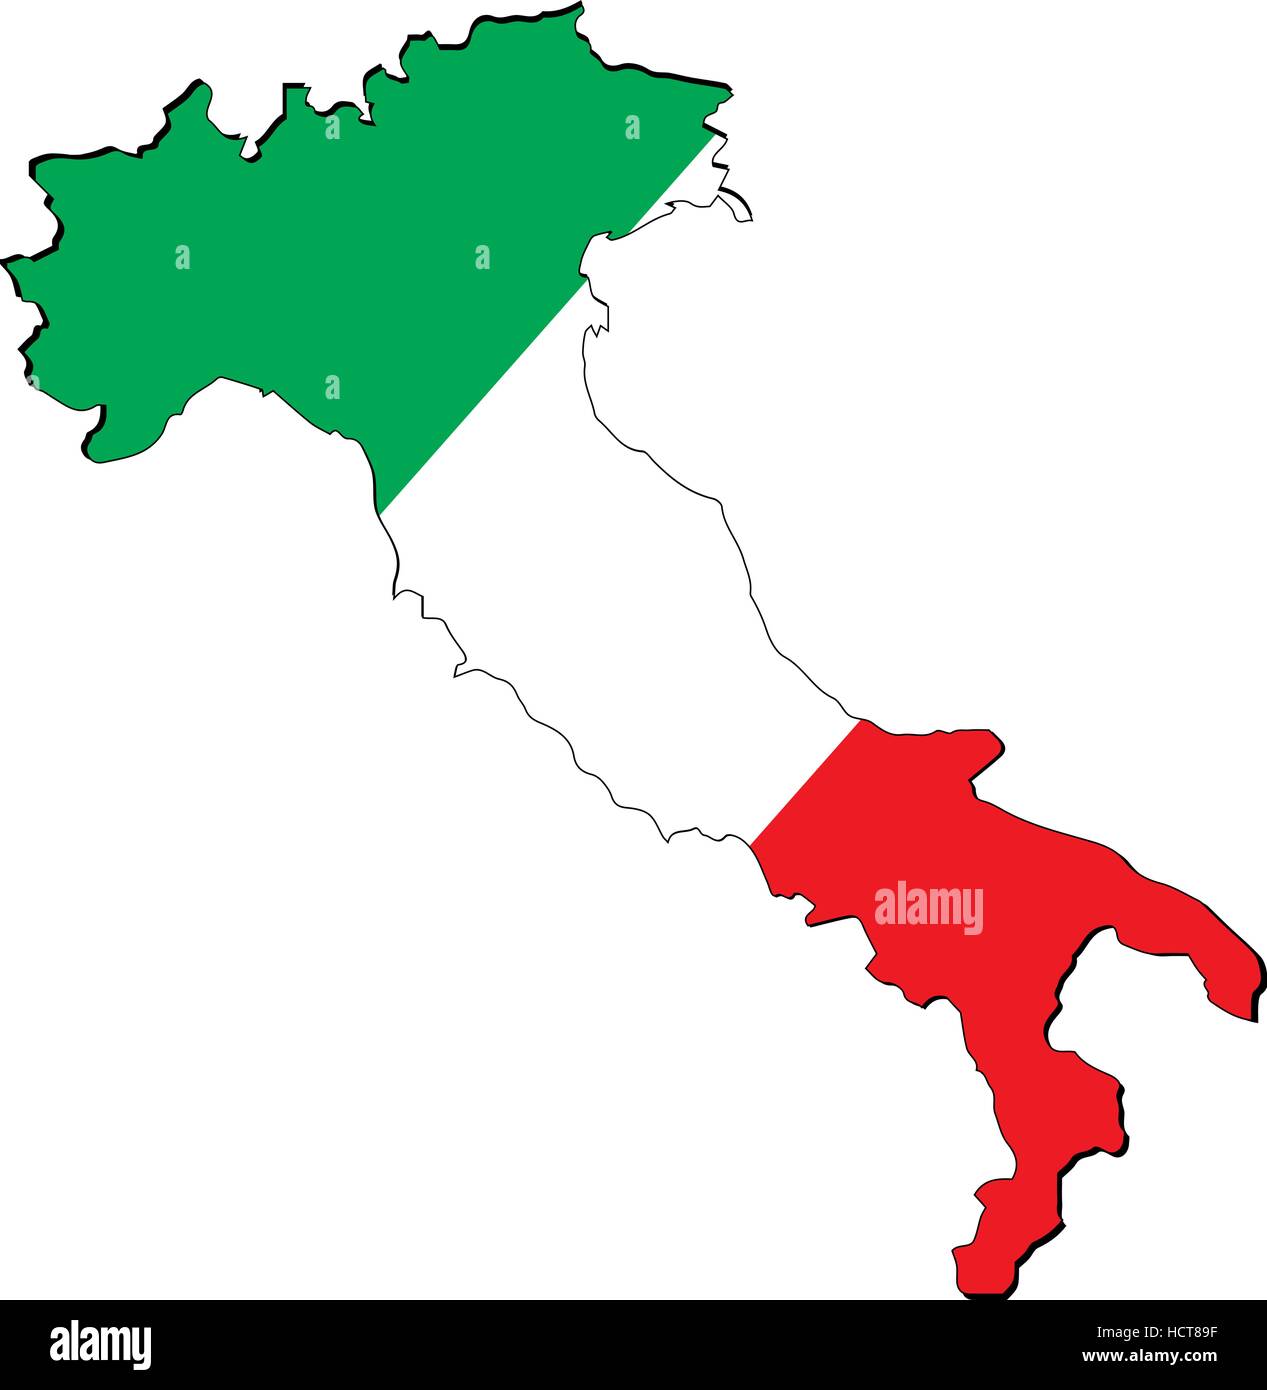 Italie carte haute résolution avec drapeau du pays. Pavillon de l'Italie en superposition sur la carte plan détaillé isolé sur fond blanc Illustration de Vecteur